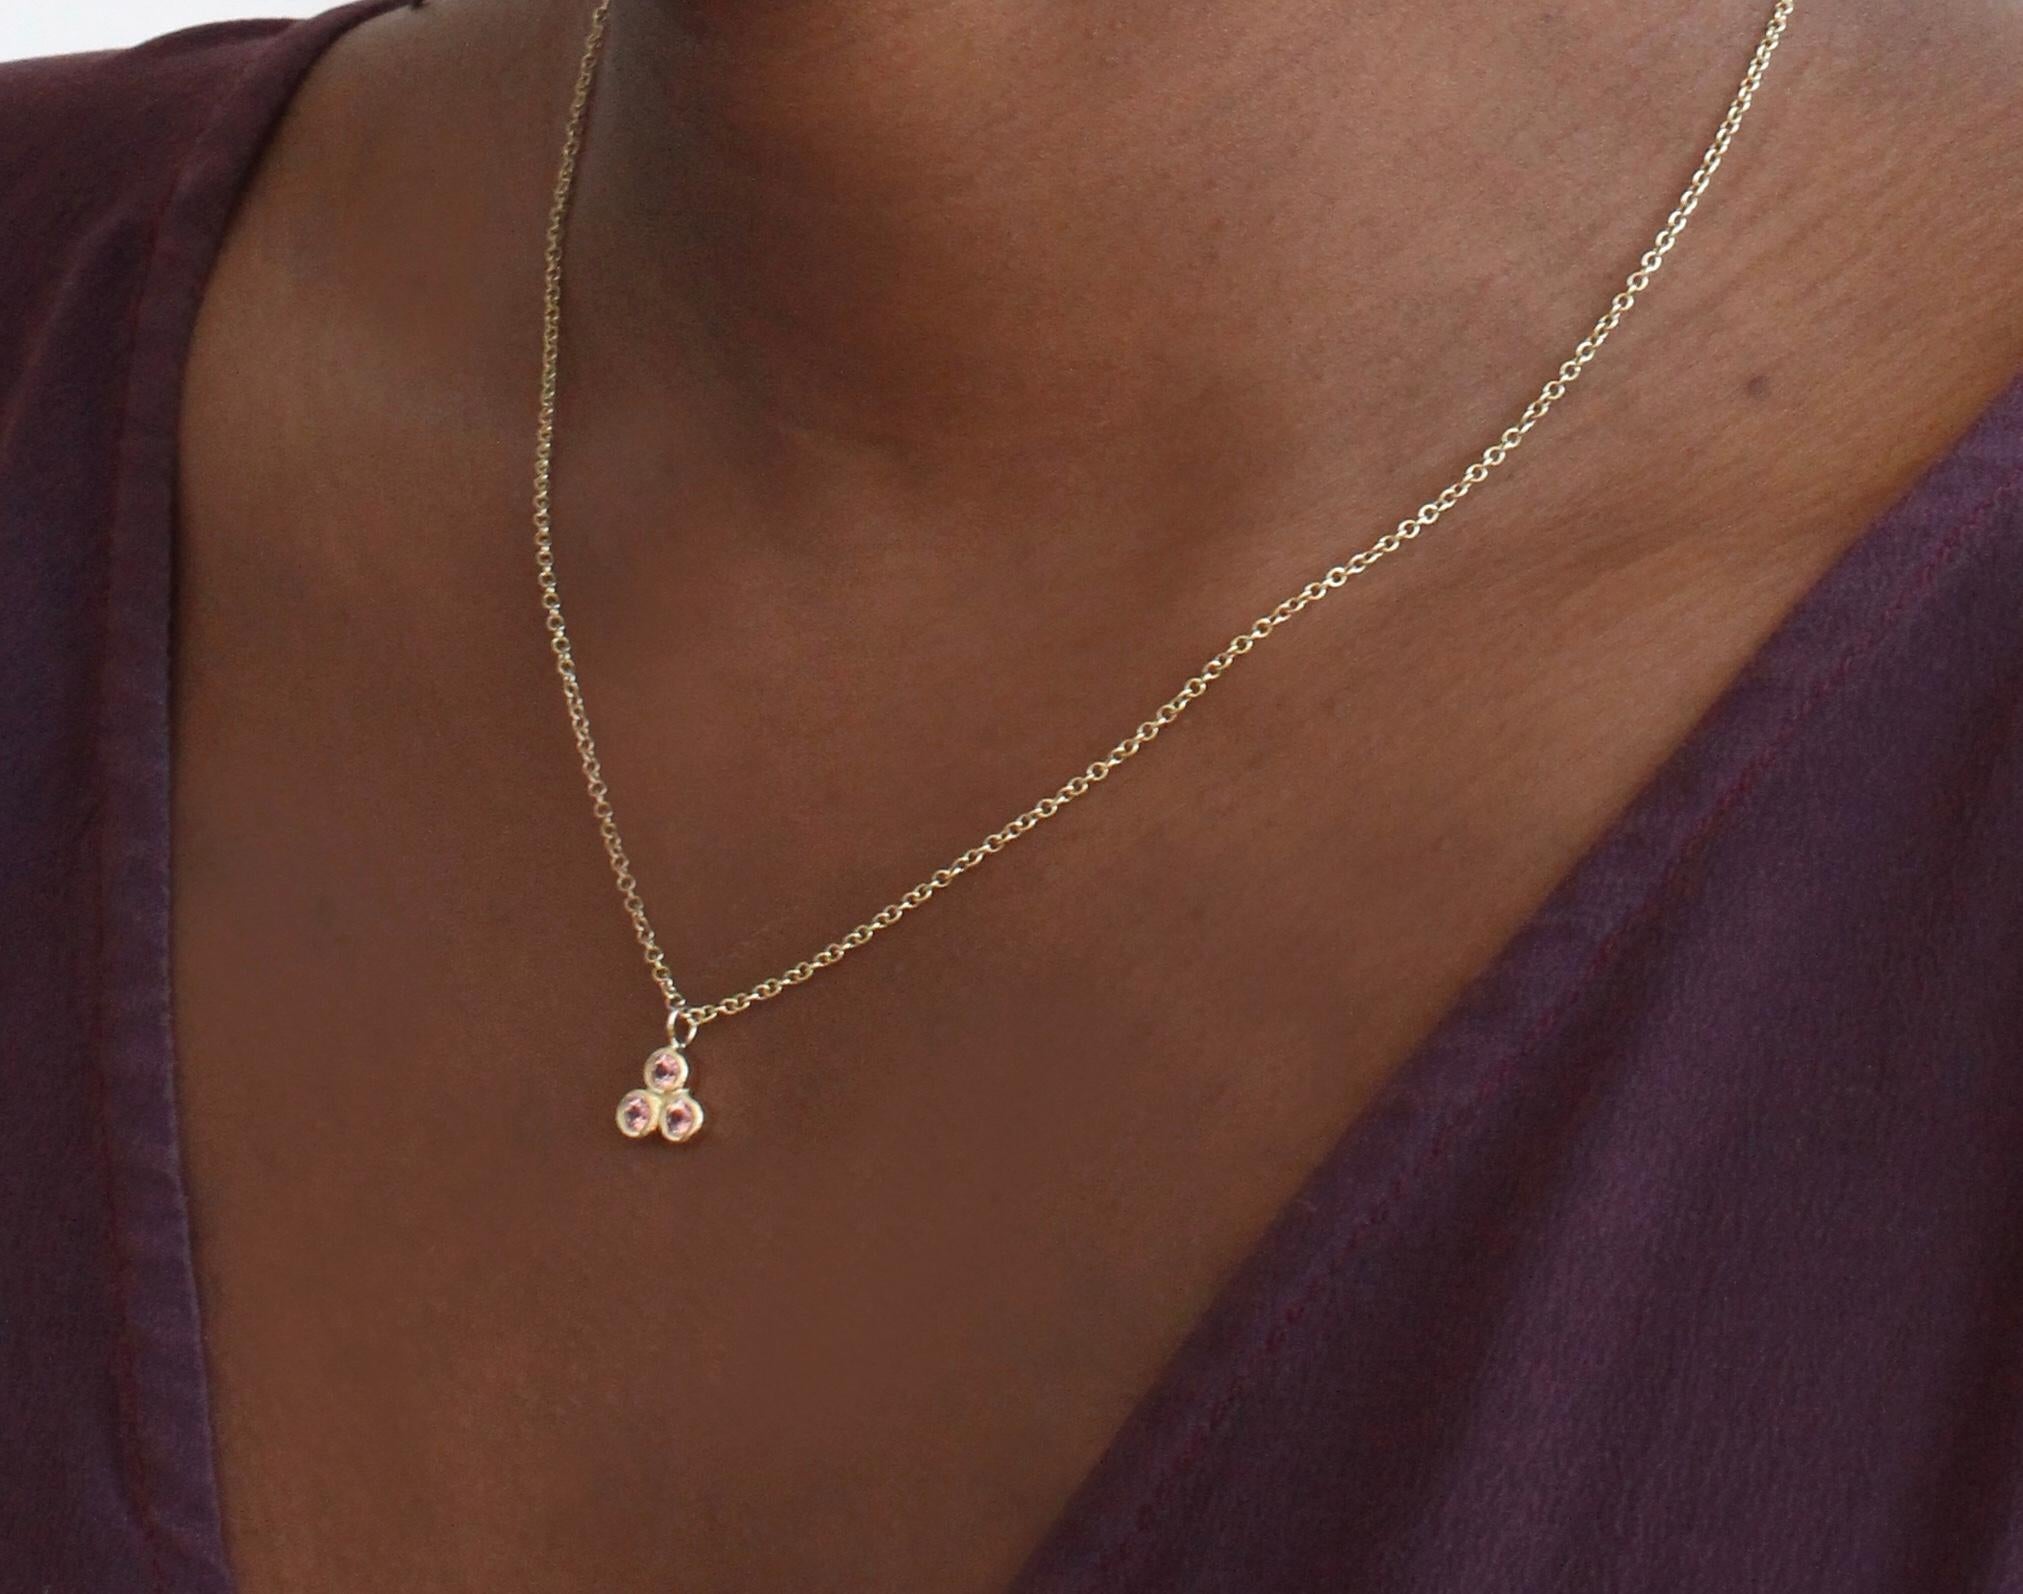 Einfach, originell und doch klassisch. Unsere Drei-Punkte-Halskette verleiht einen Hauch von Glanz und Eleganz. Drei Steine sorgen für einen hohen Glitzerfaktor. Eine schöne und zierliche Halskette, die sich aber auch hervorragend zum